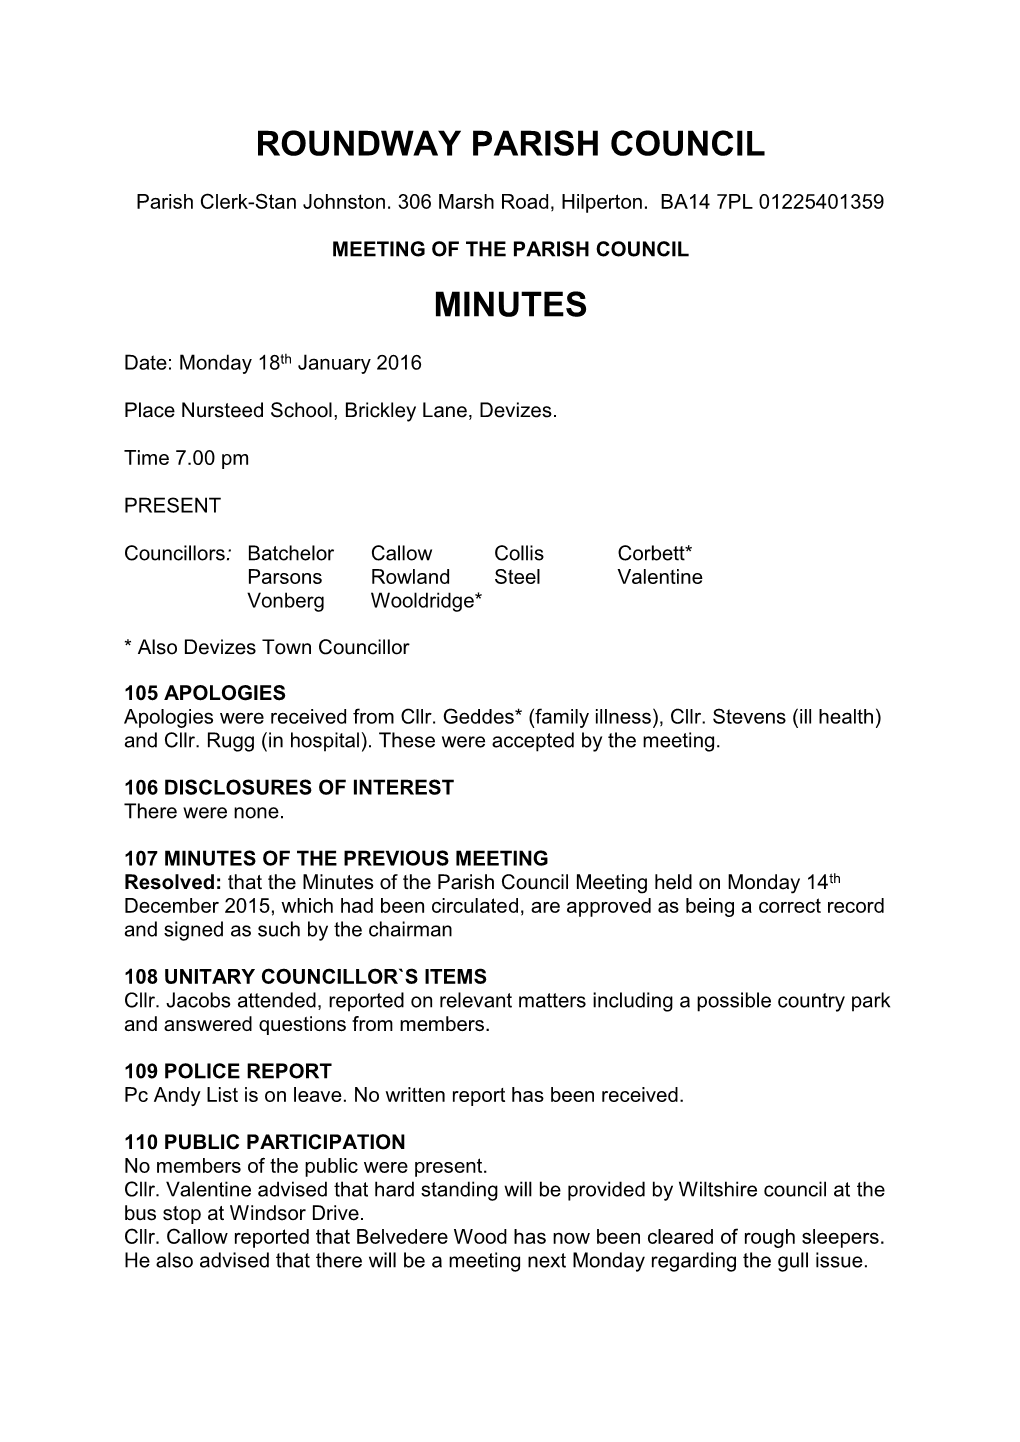 Roundway Parish Council Minutes